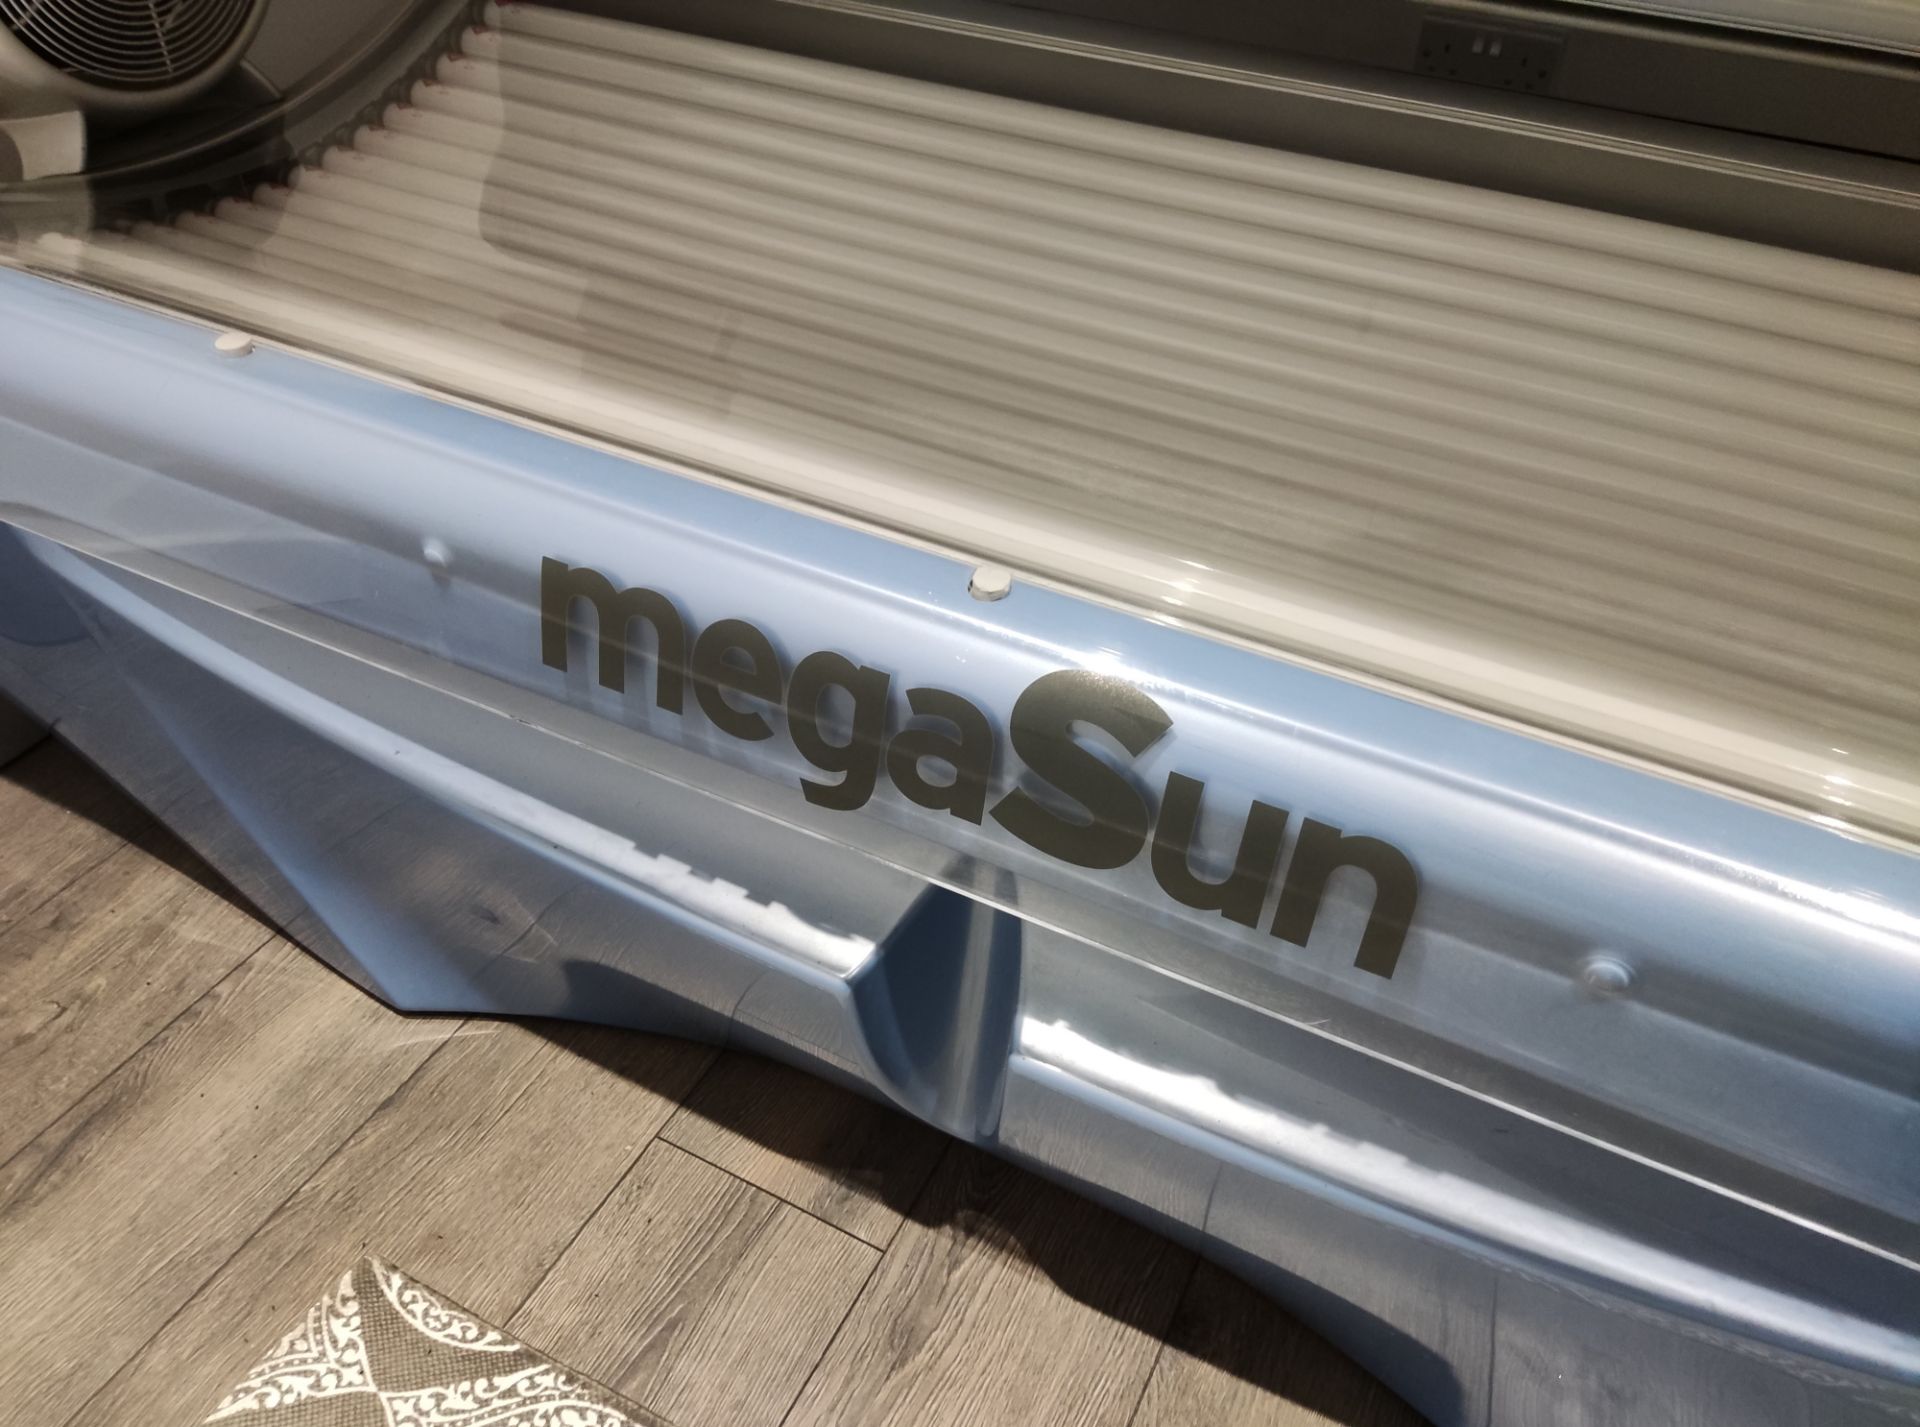 1 x Megasun XXL Super Power 3500 Commercial Sunbed - LBC100 - CL763- Location: Sale M33Buyer - Image 3 of 15